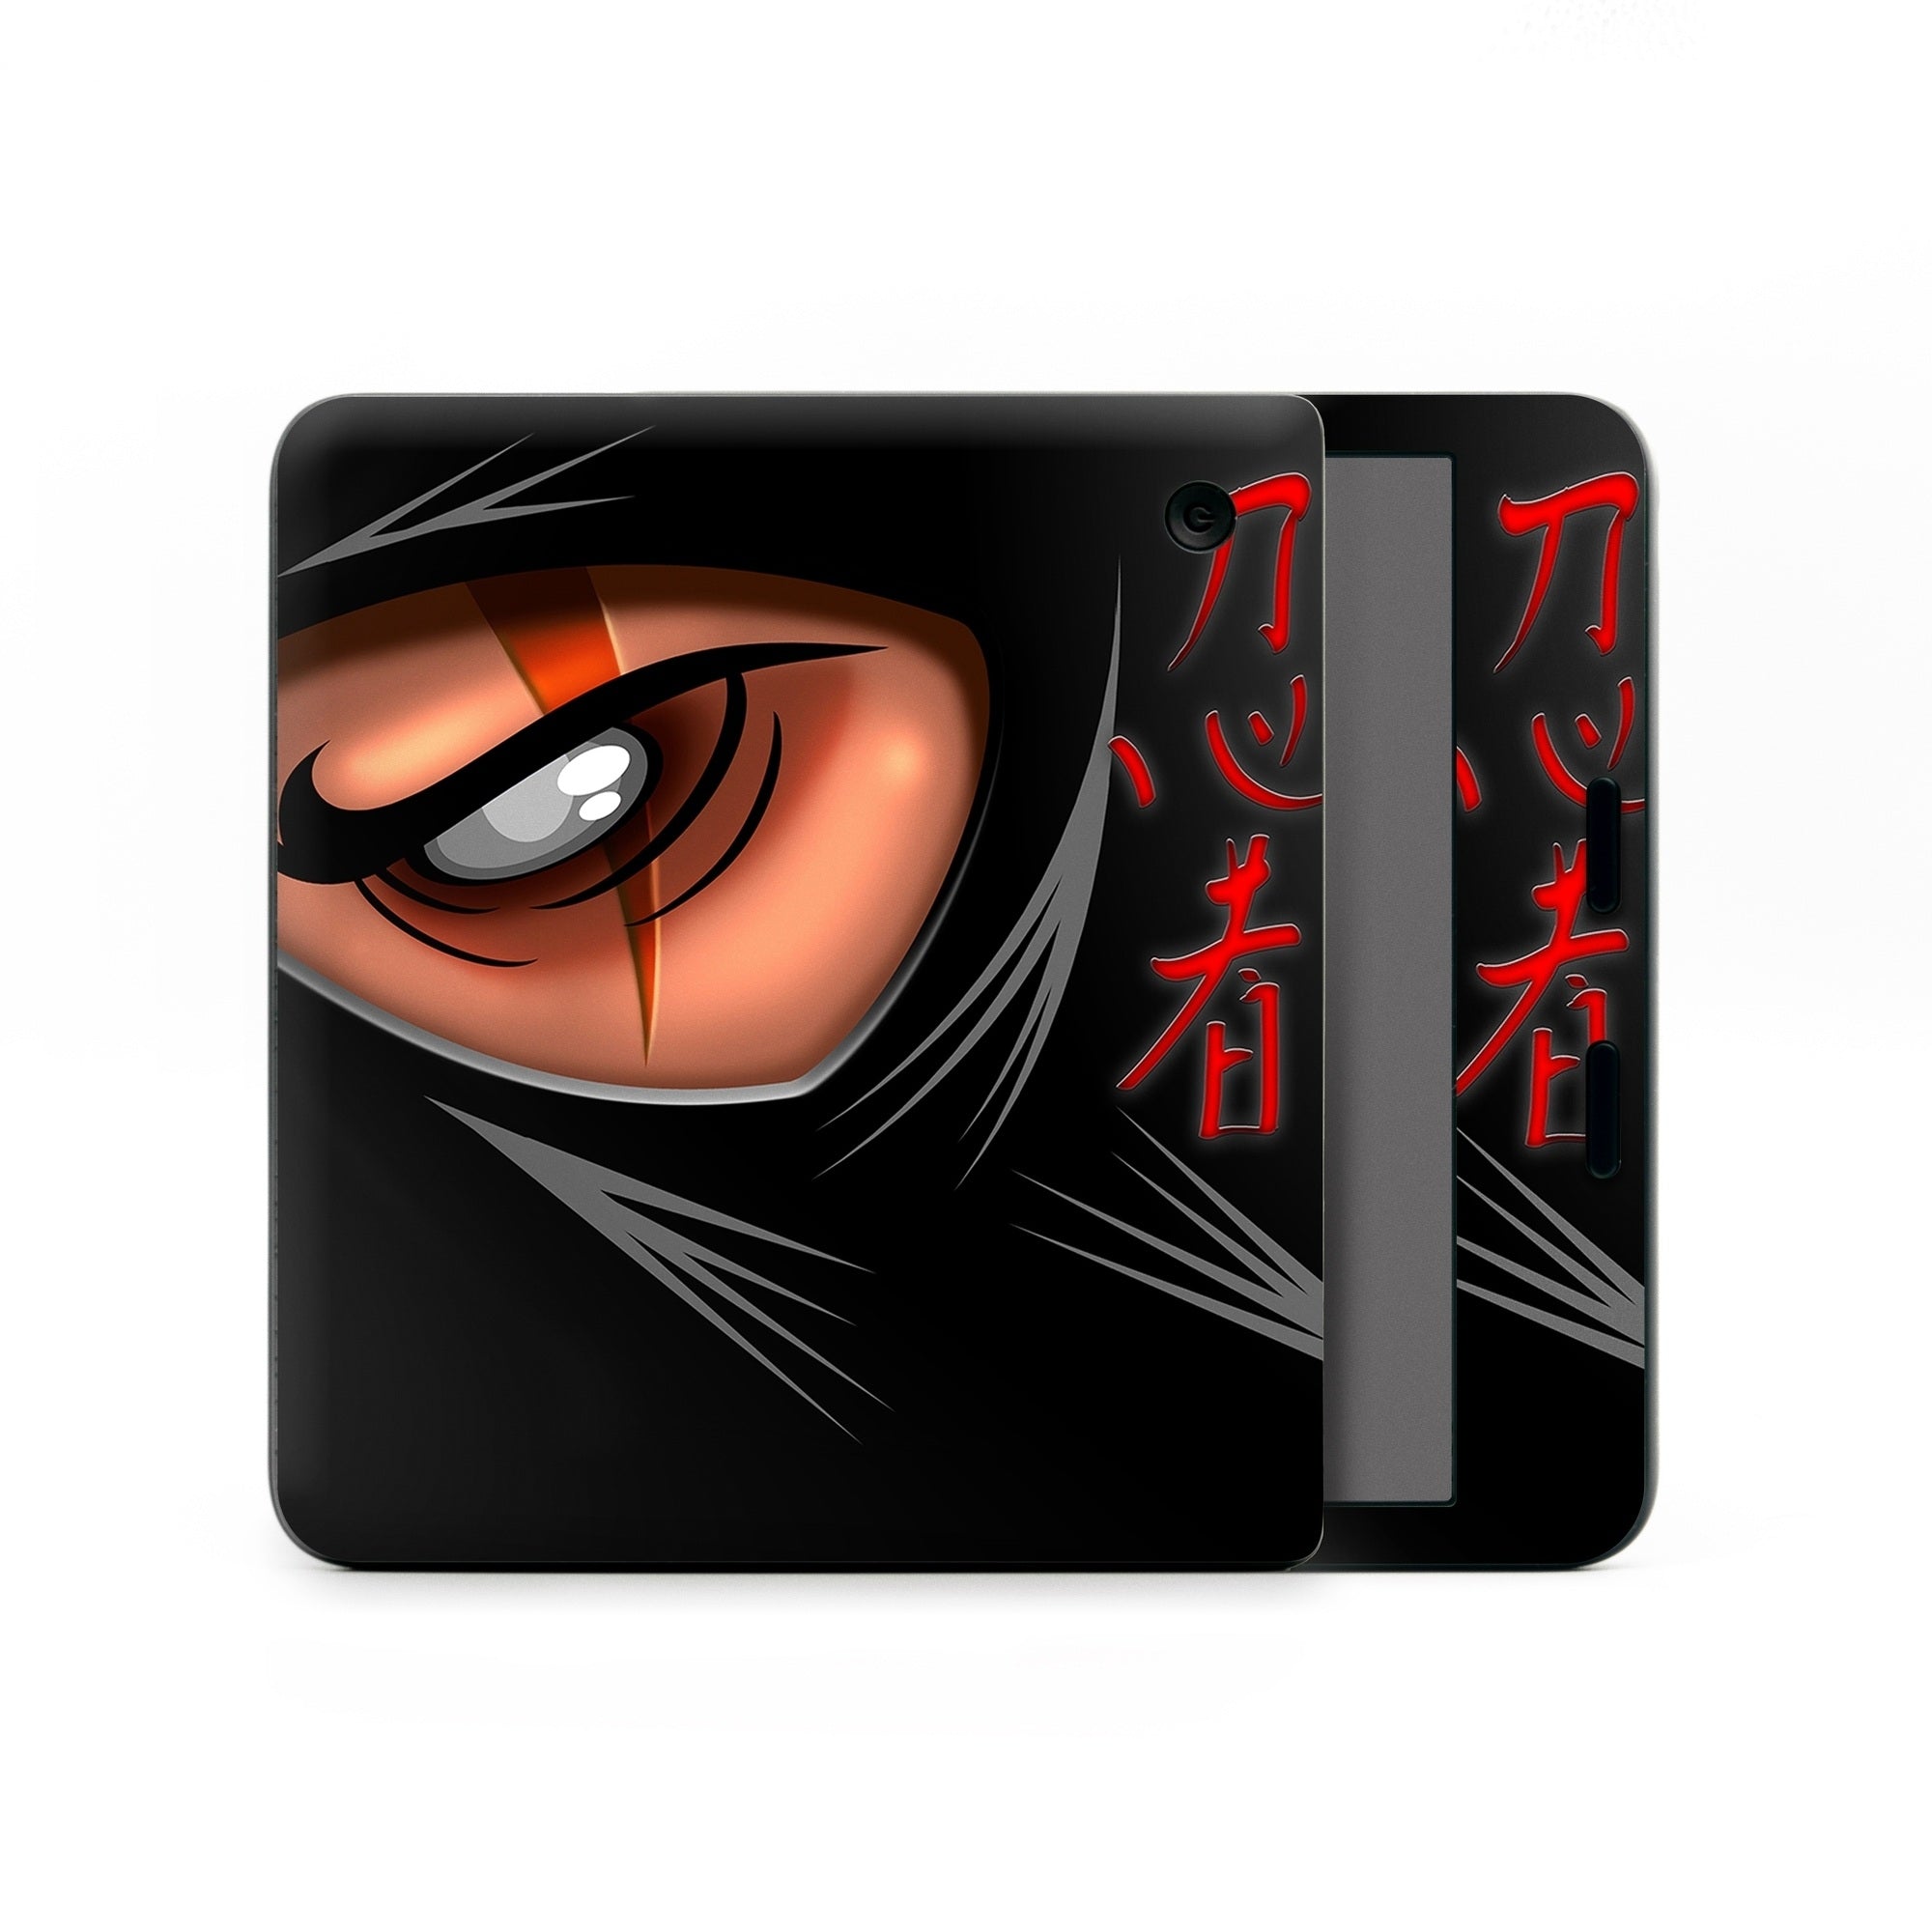 Ninja - Kobo Libra Colour Skin